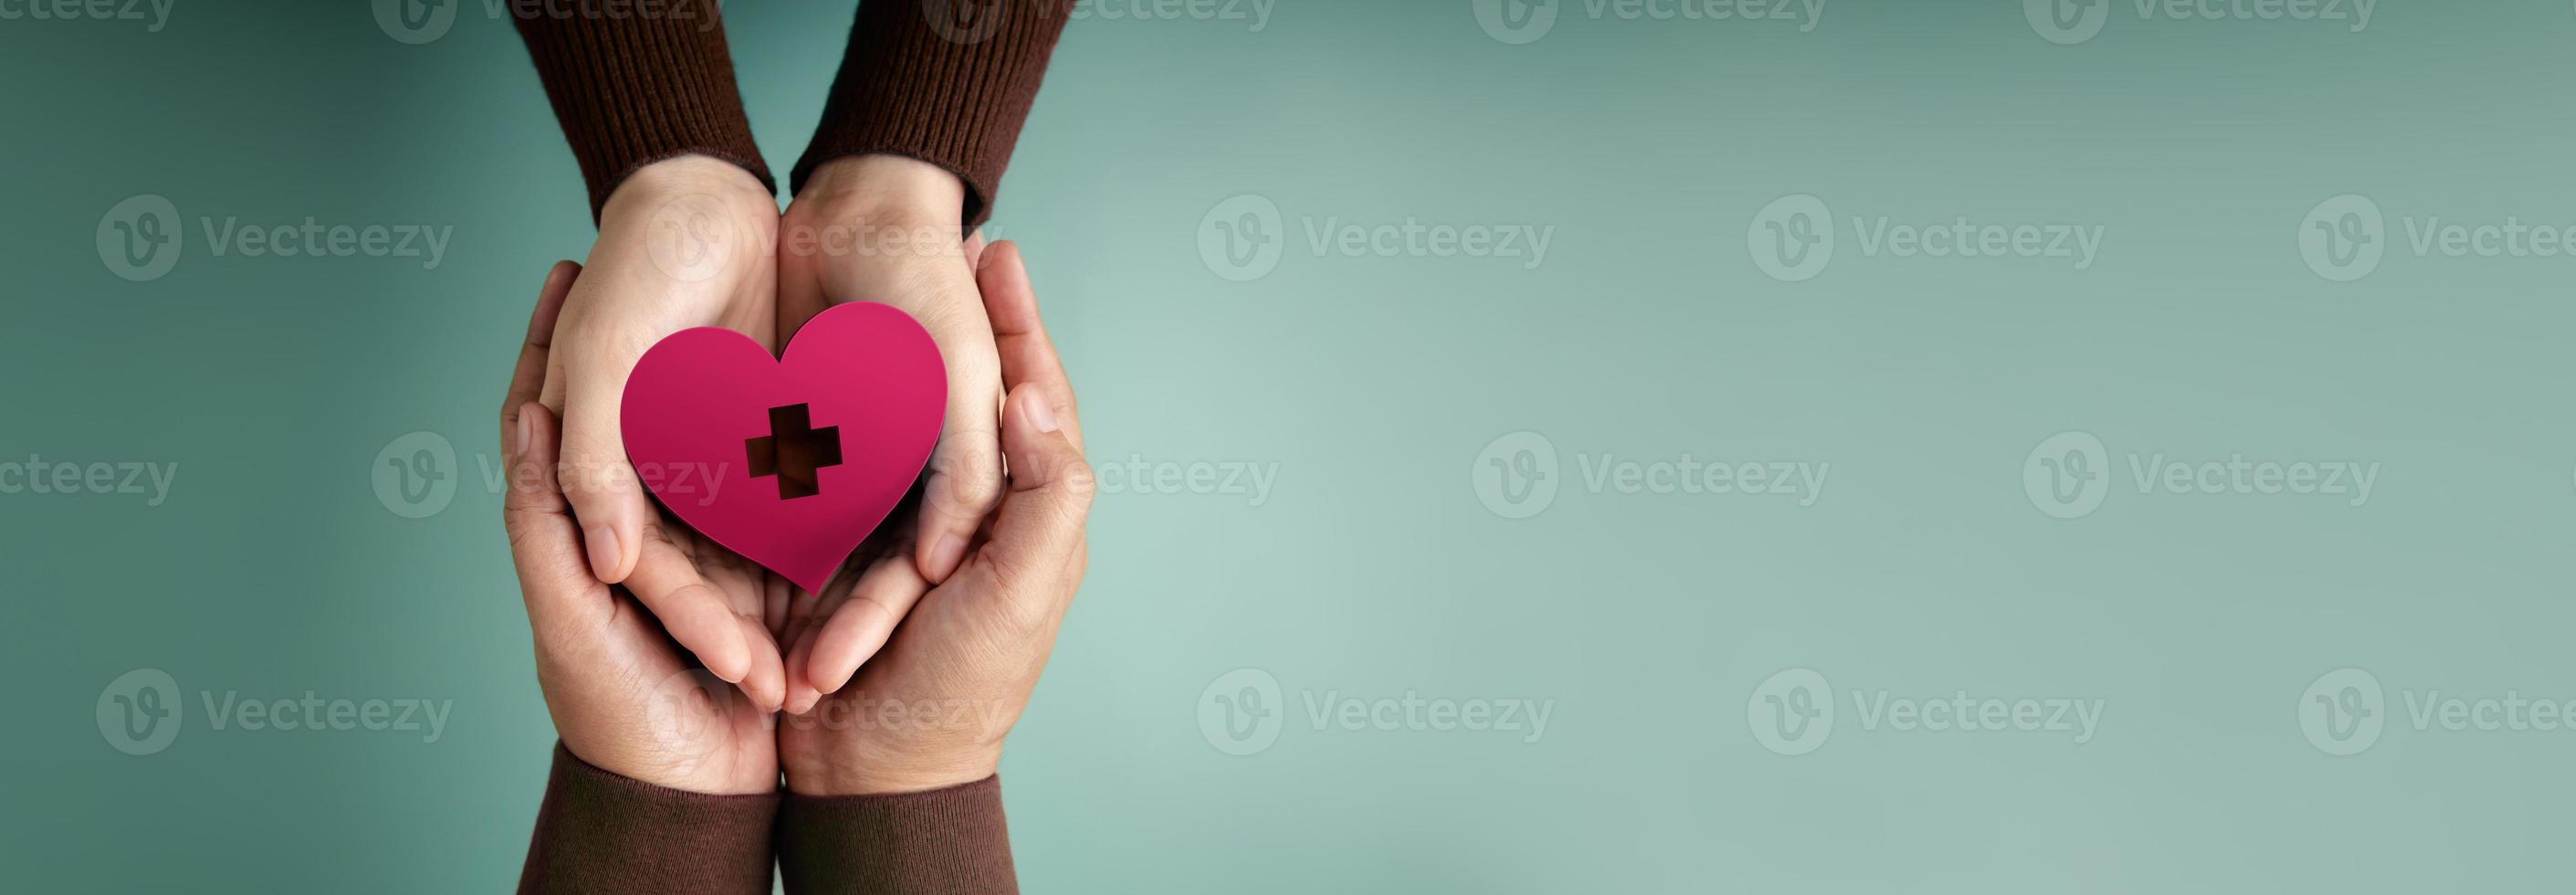 bijdrage concepten. handen van vrijwilliger mensen omarmen een hart vorm met een rood kruis teken samen. liefde, Gezondheid zorg, bijdrage en liefdadigheid. top visie foto